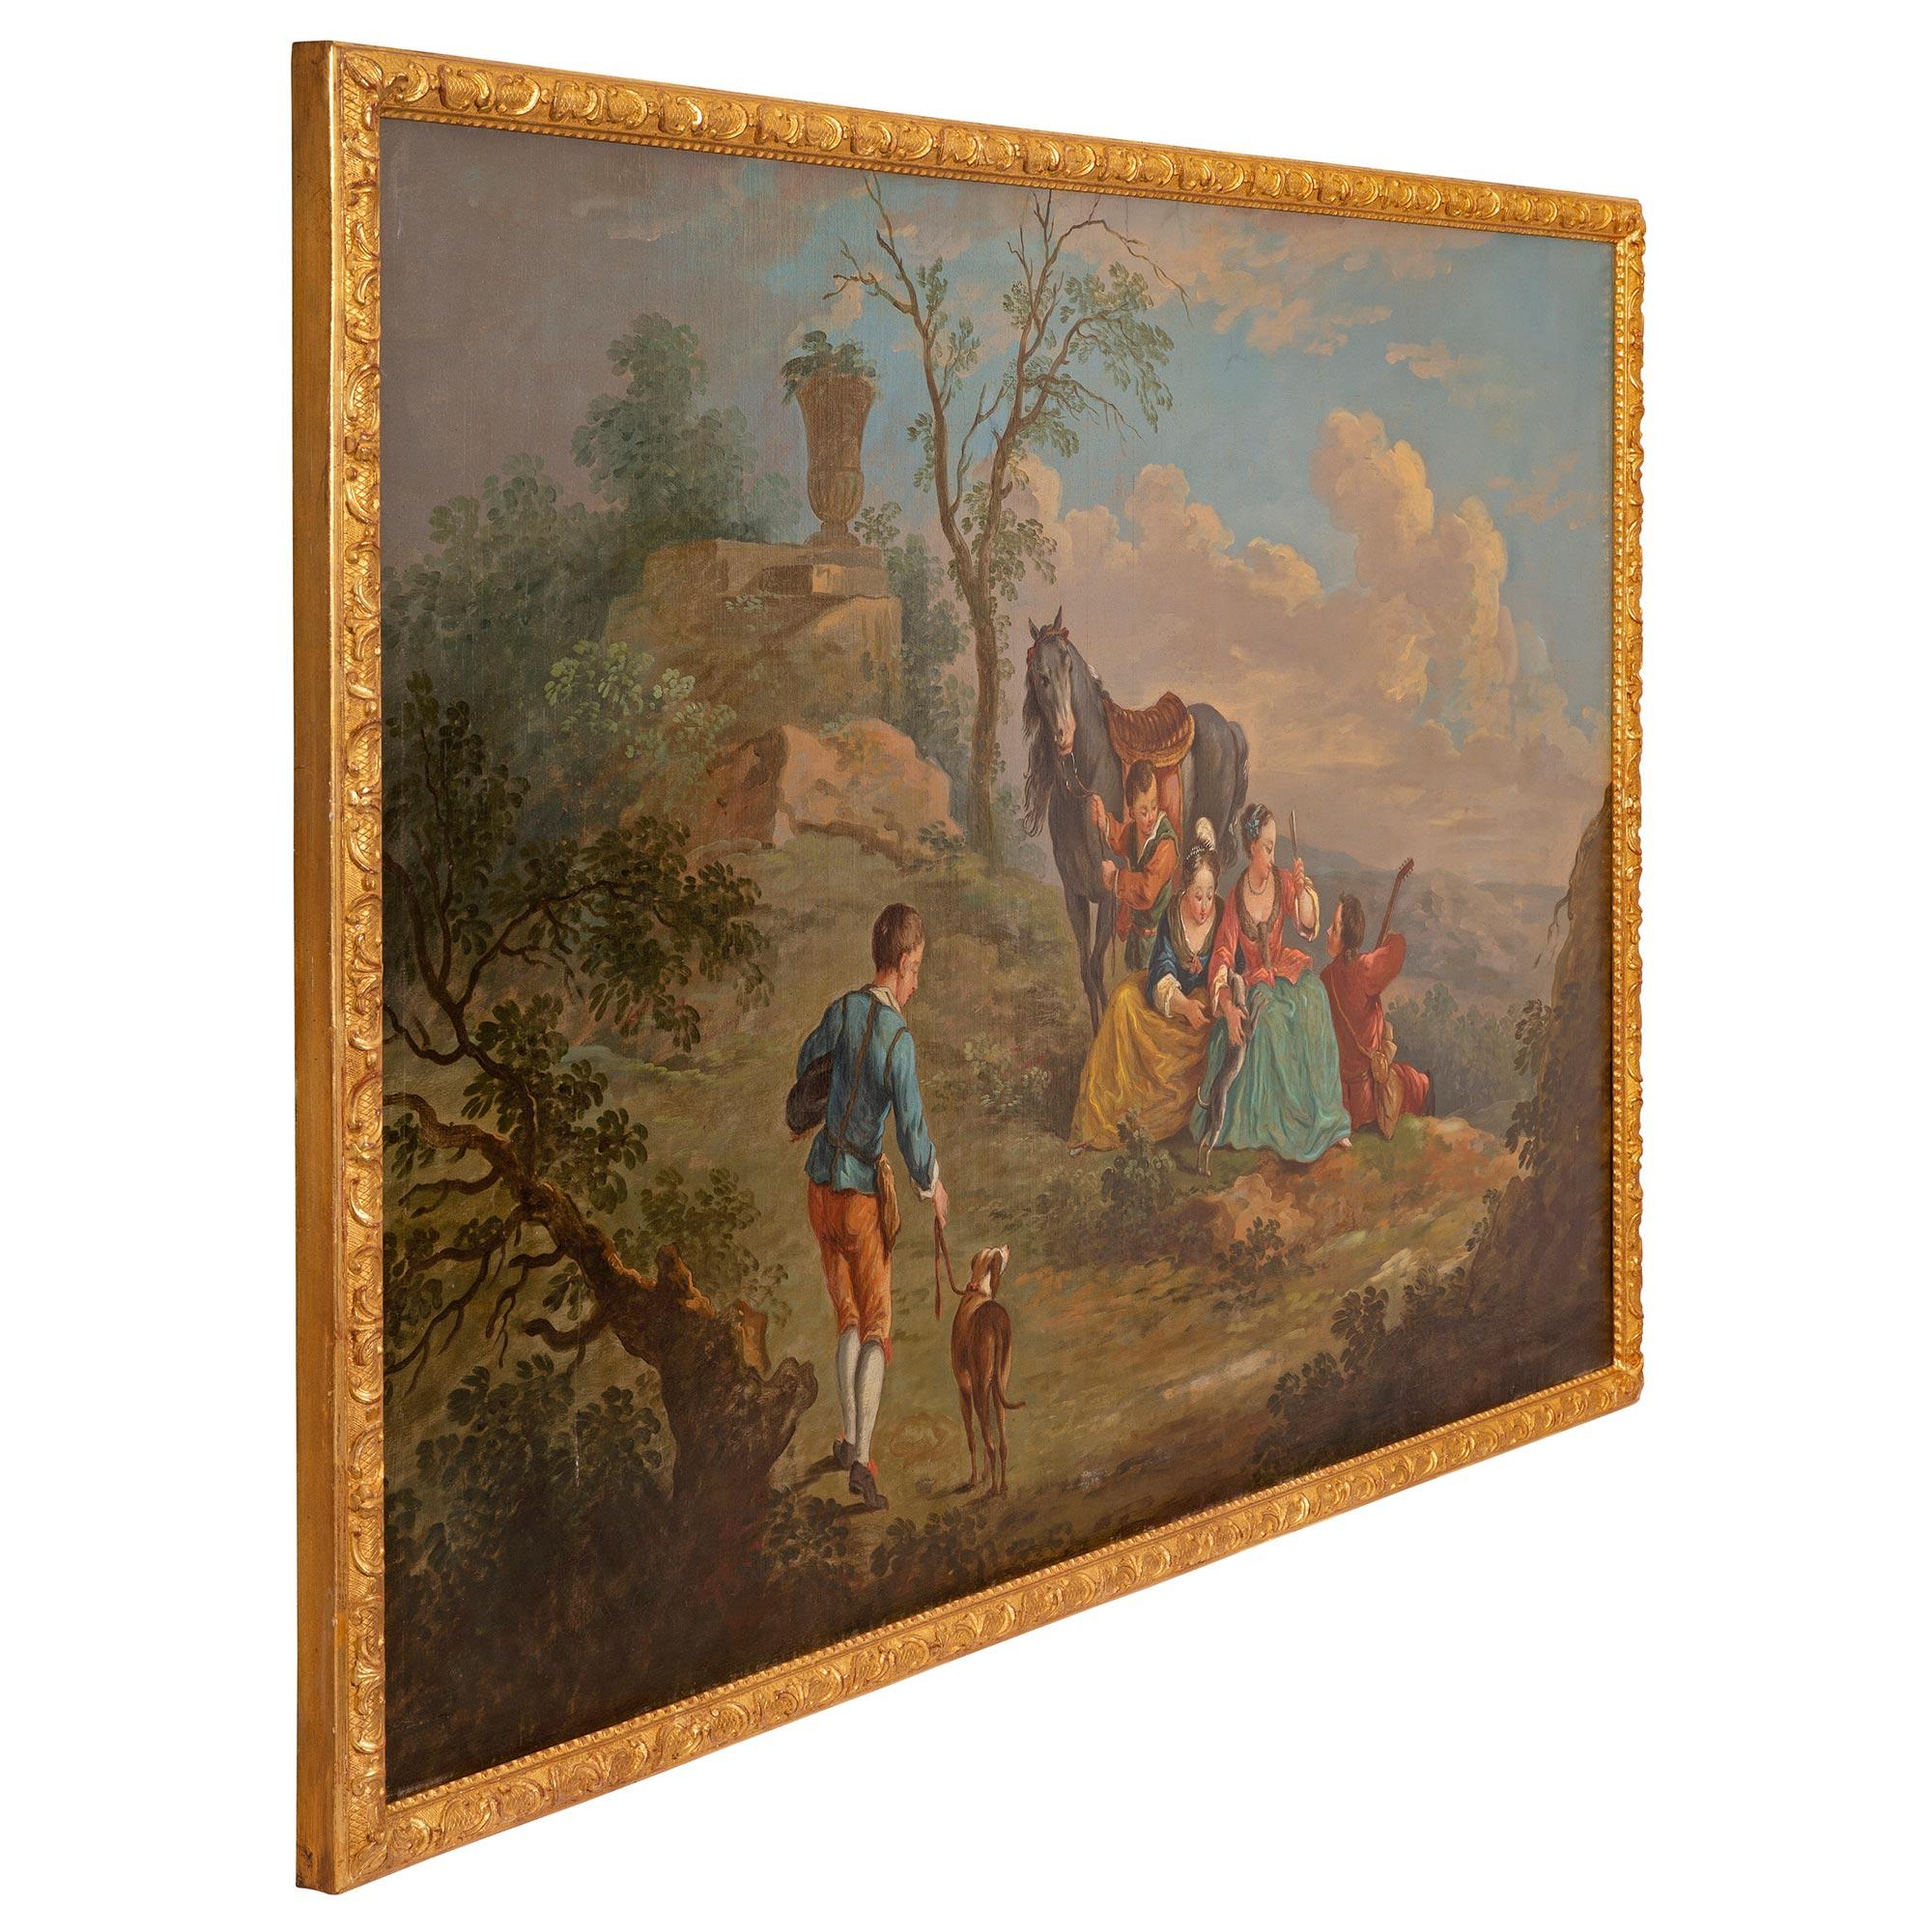 Une paire de peintures à l'huile sur toile du 19e siècle continental, d'une grande beauté et d'un grand charme. Chaque tableau est placé dans son cadre d'origine en bois doré avec des motifs de perles et de feuillages finement sculptés. La peinture